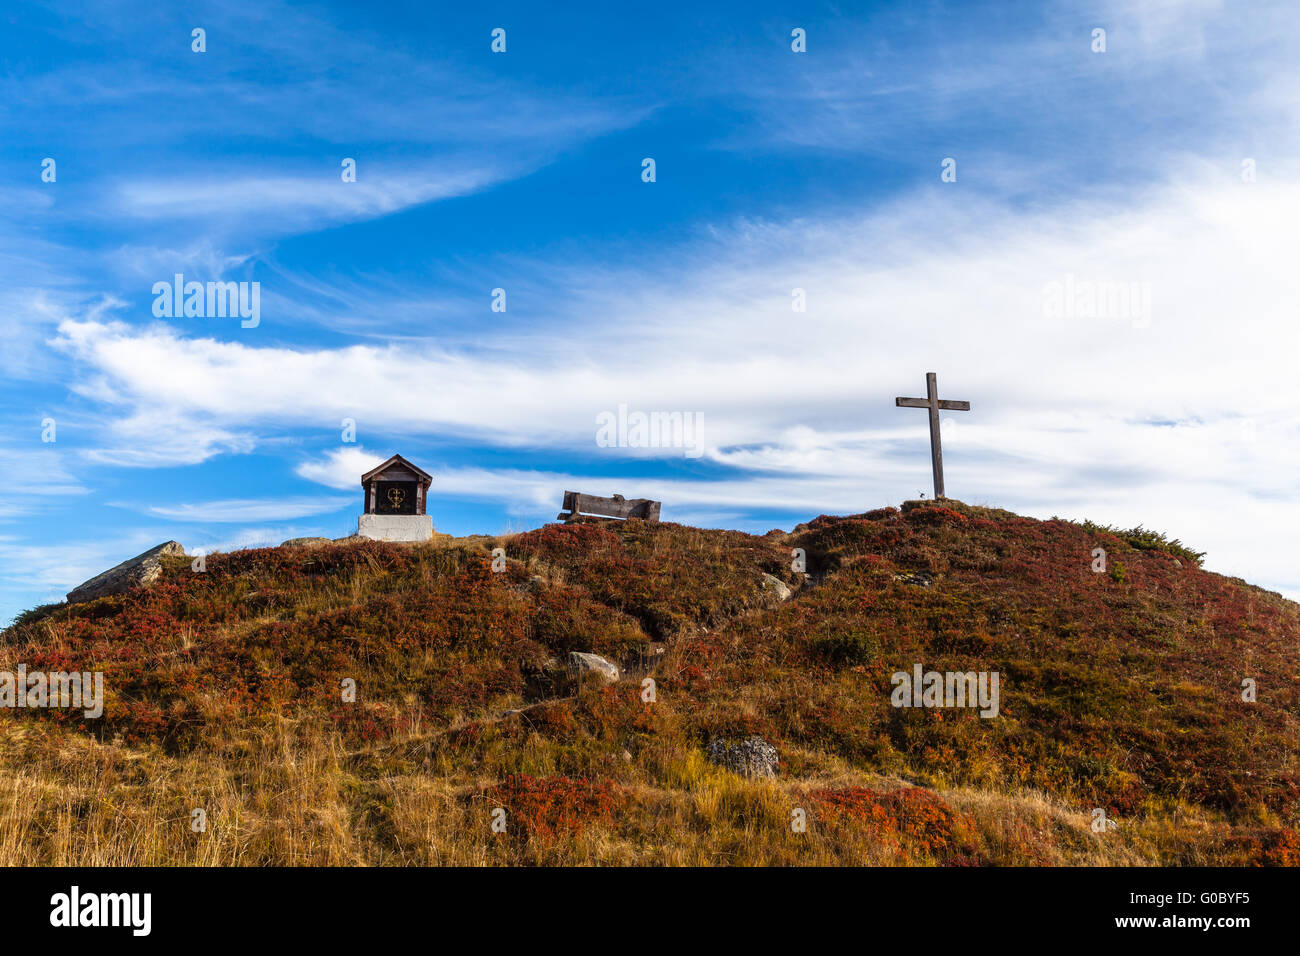 Bellissima vista del piccolo santuario e la croce sulla montagna delle Alpi svizzere, con cielo blu in background Foto Stock